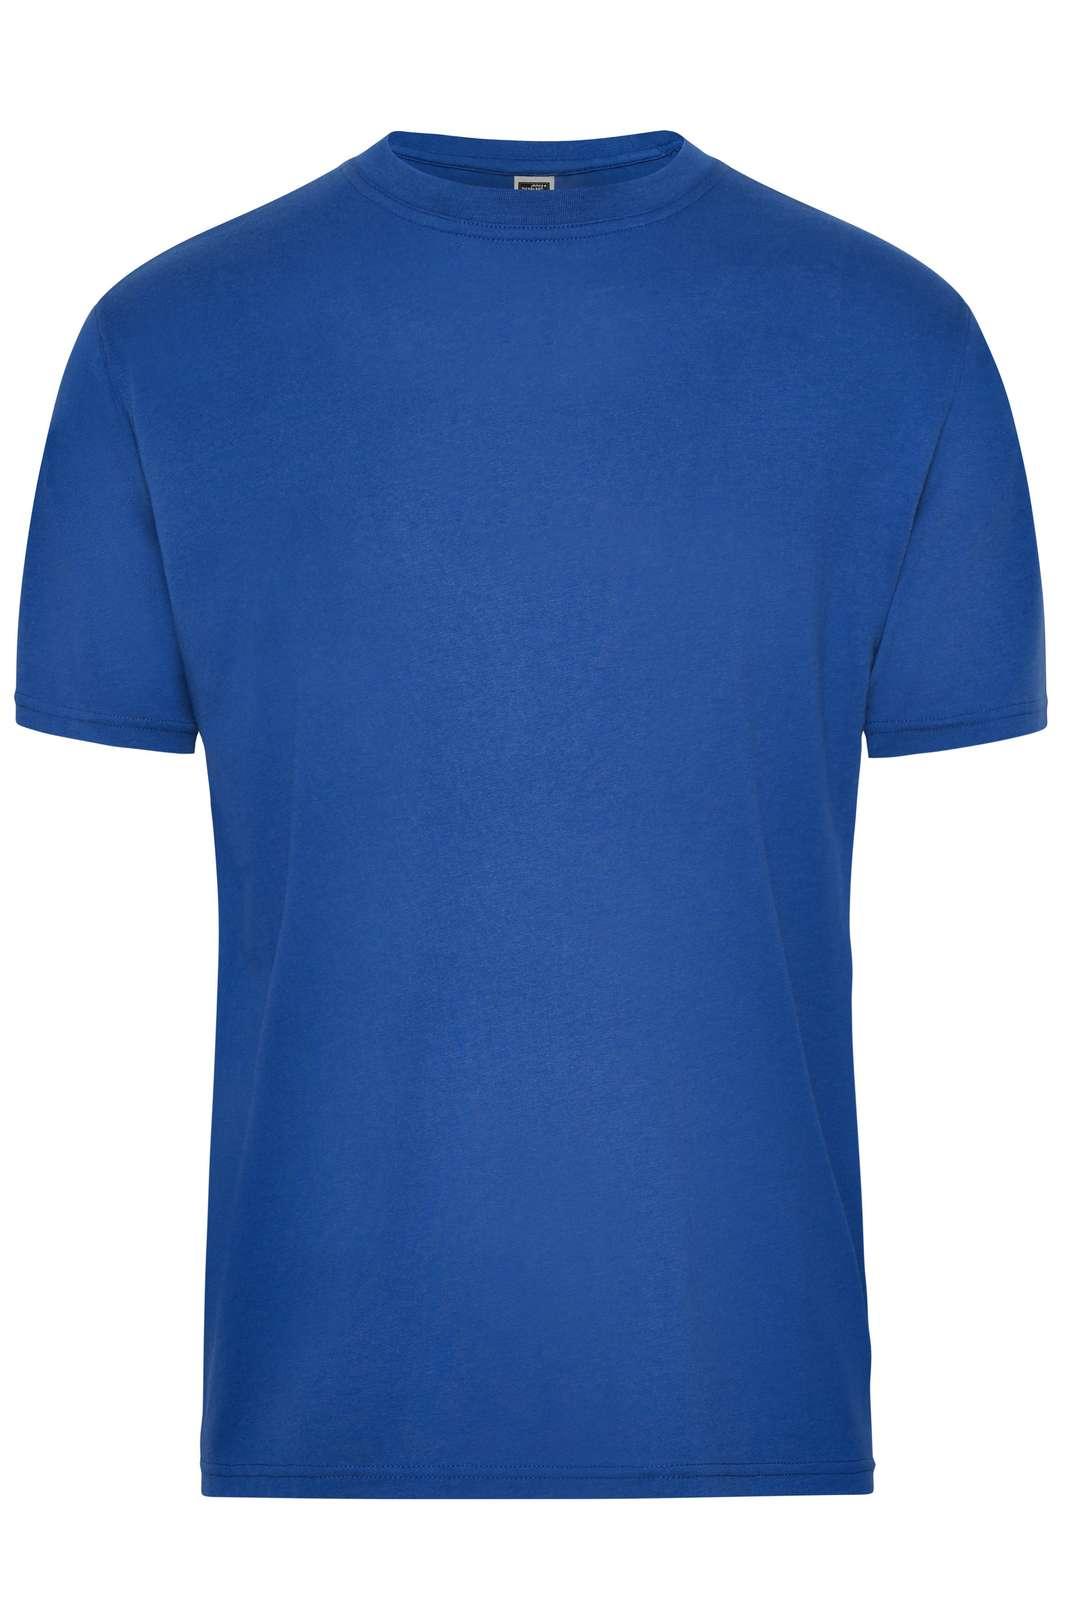 JN BIO T-SHIRT - Arbejds T-shirt - JA Profil 